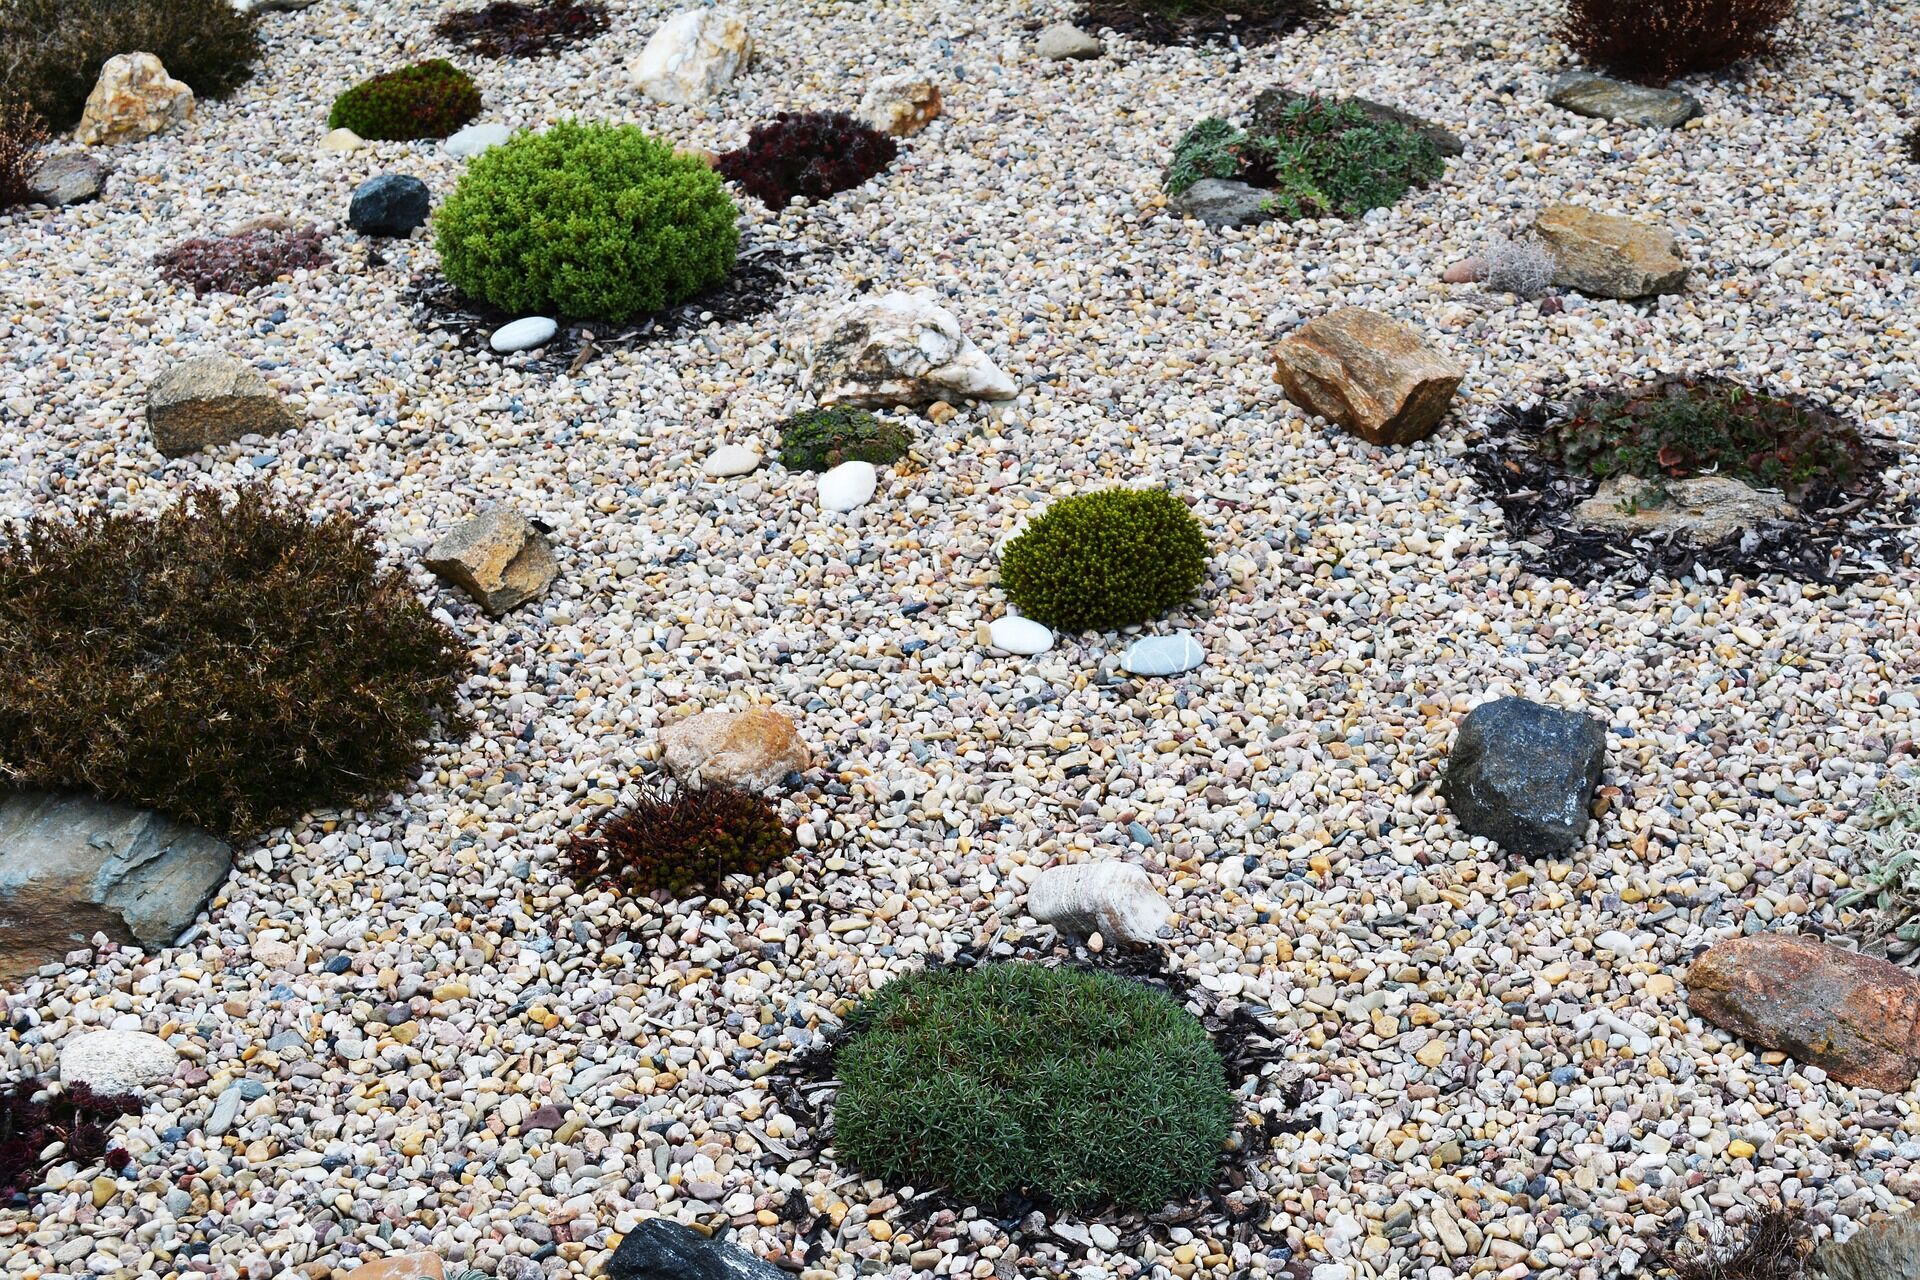 Как сделать сад камней своими руками: 5 советов по организации альпинария в собственном дворе 